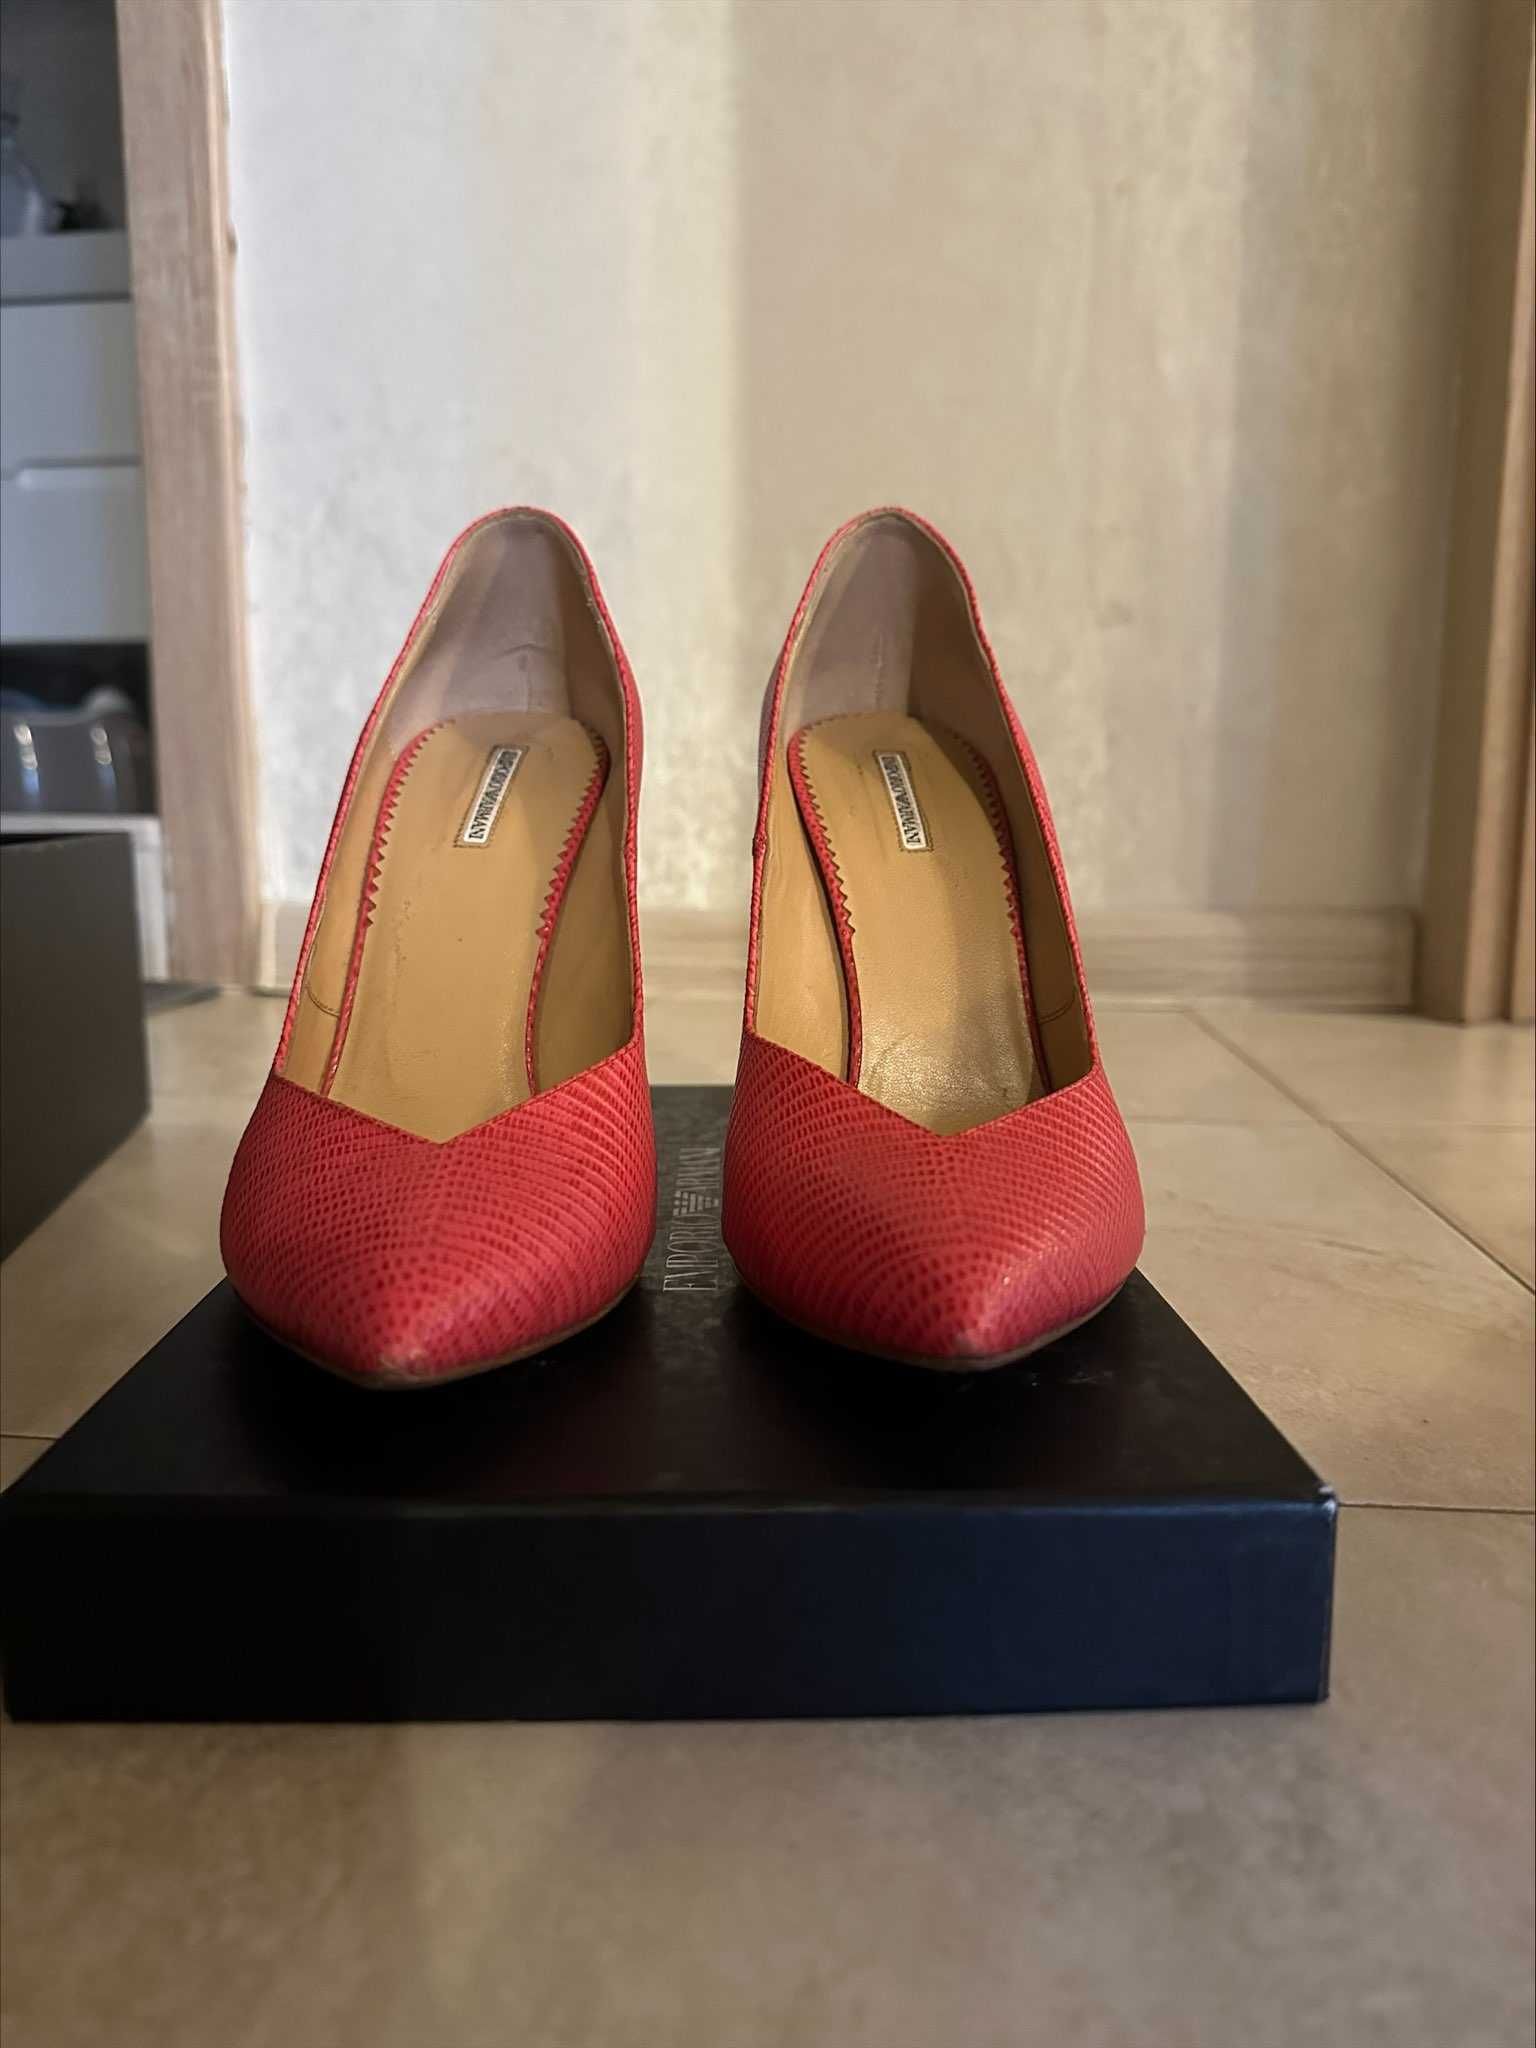 Обувки Emporio Armani, цвят фуксия, 39 номер